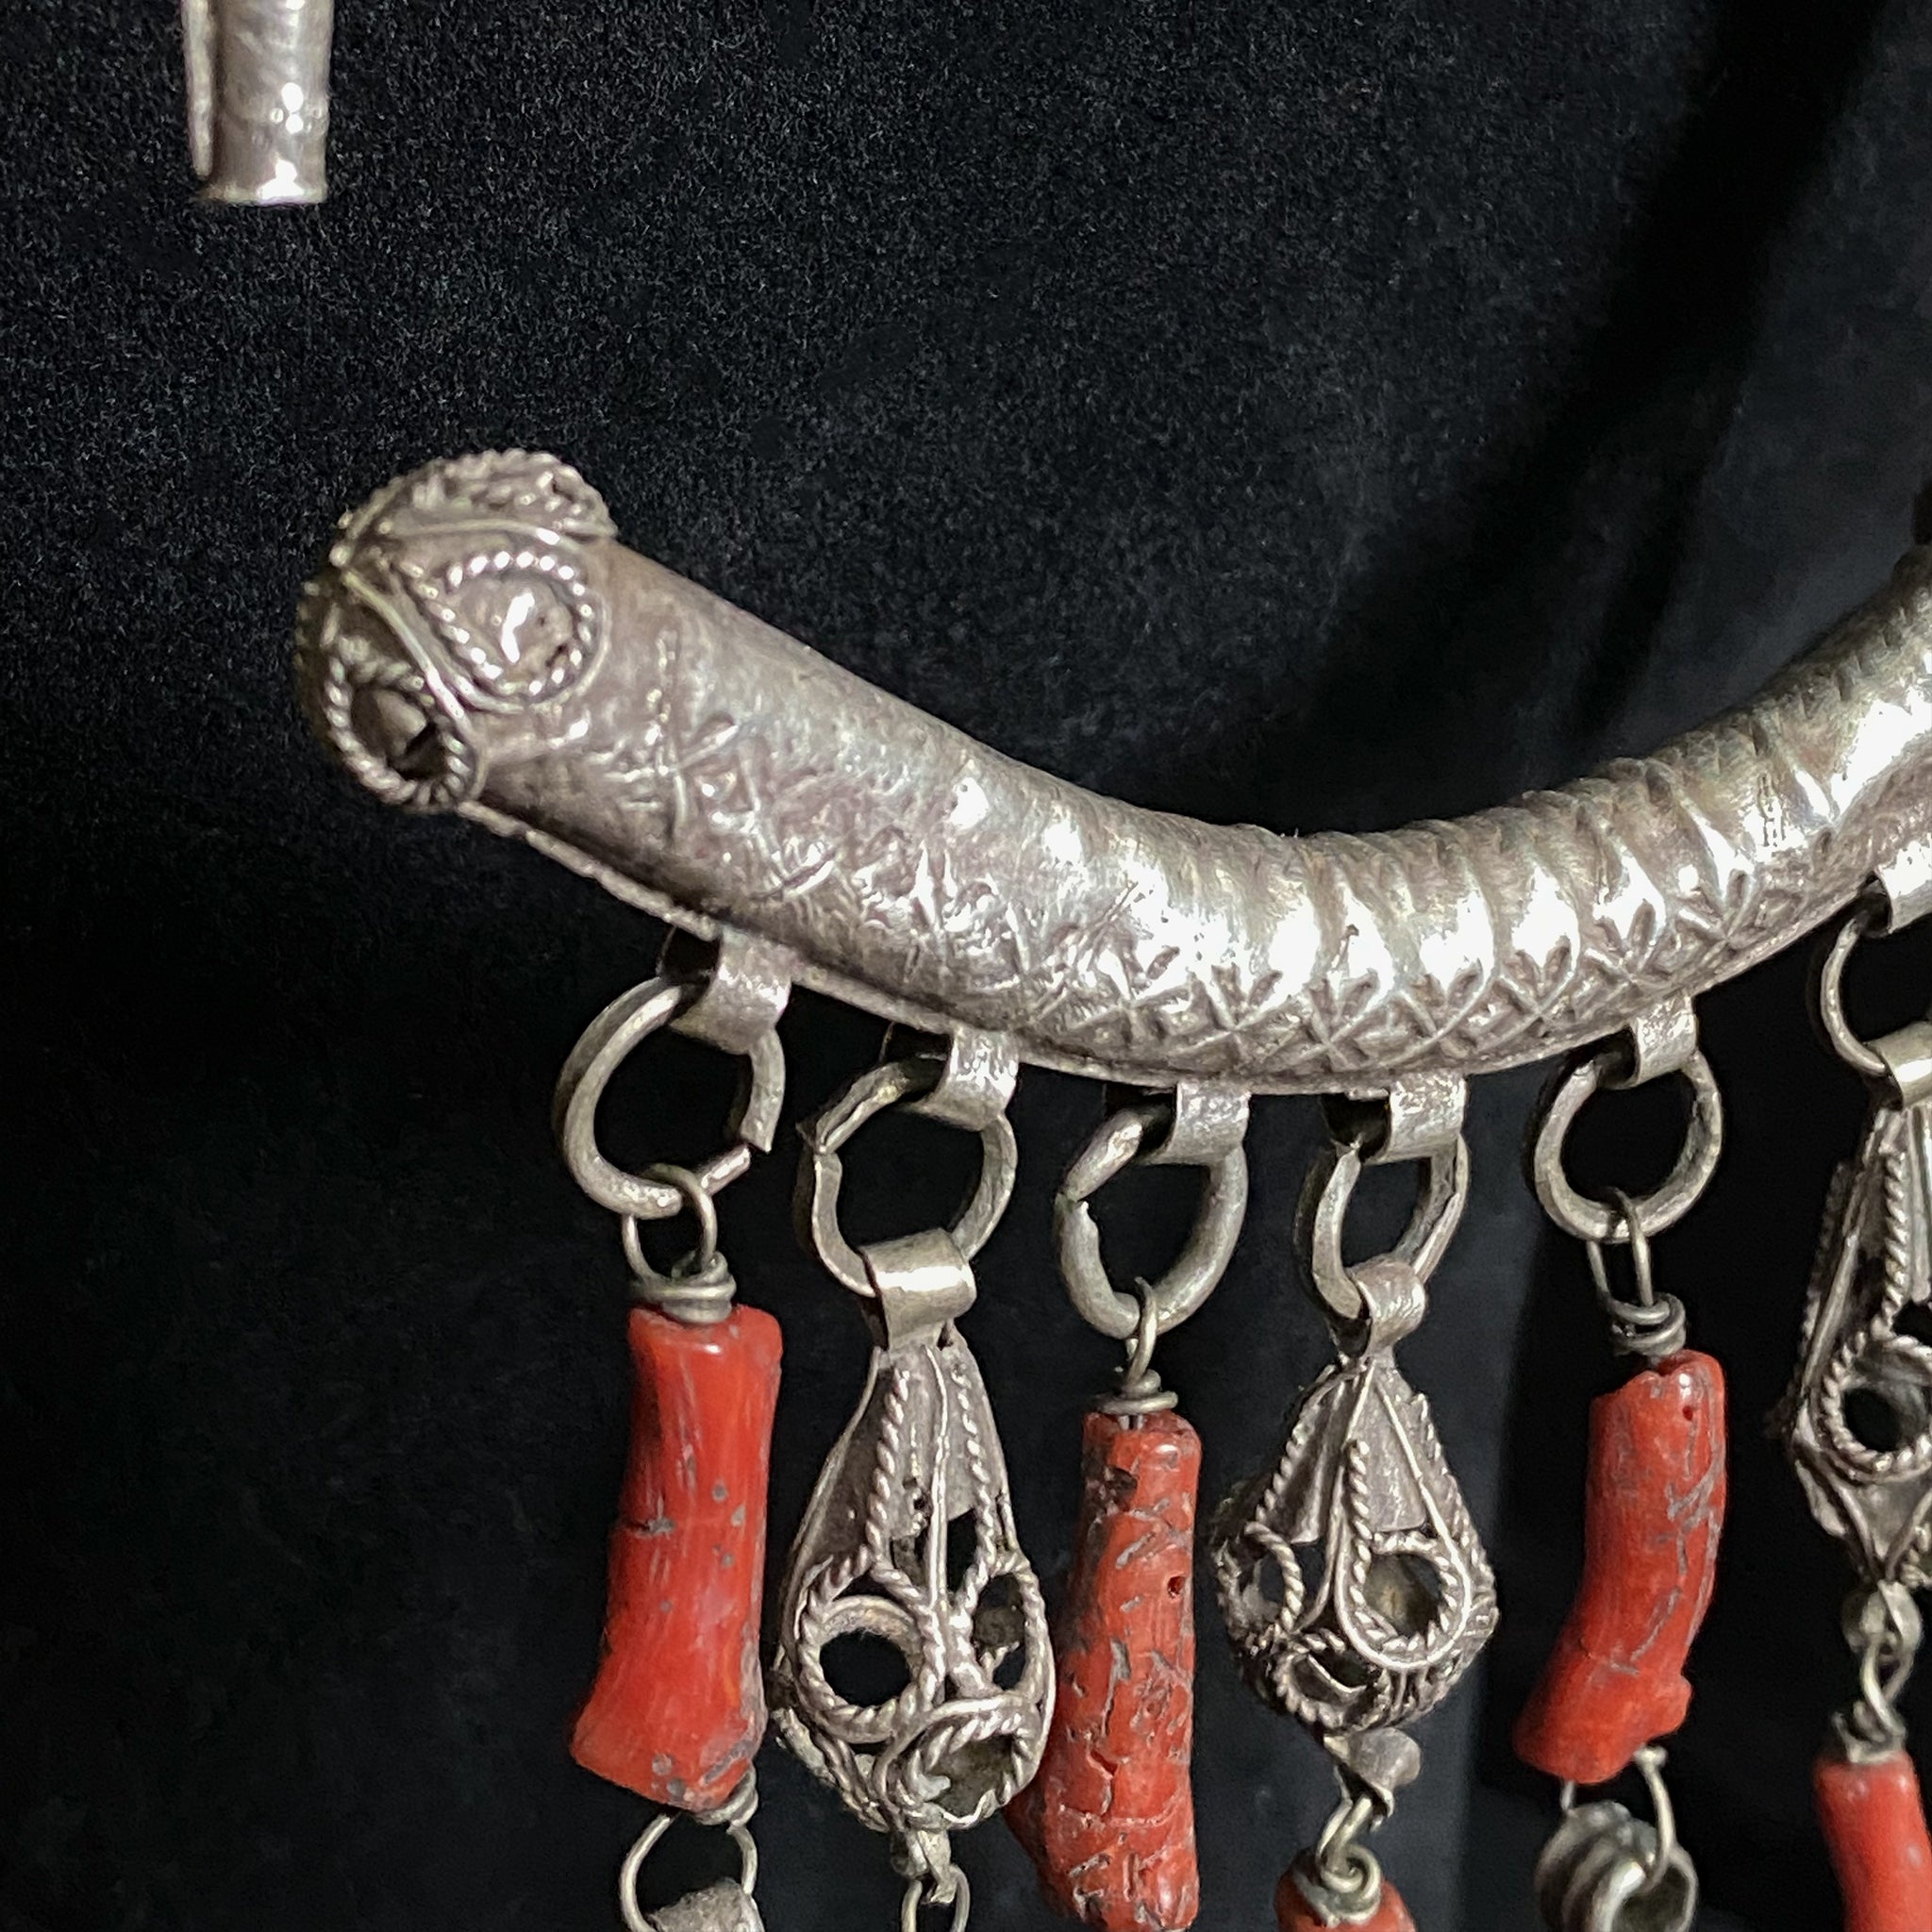 Antique silver temporal adornment from Tiznit, Morocco